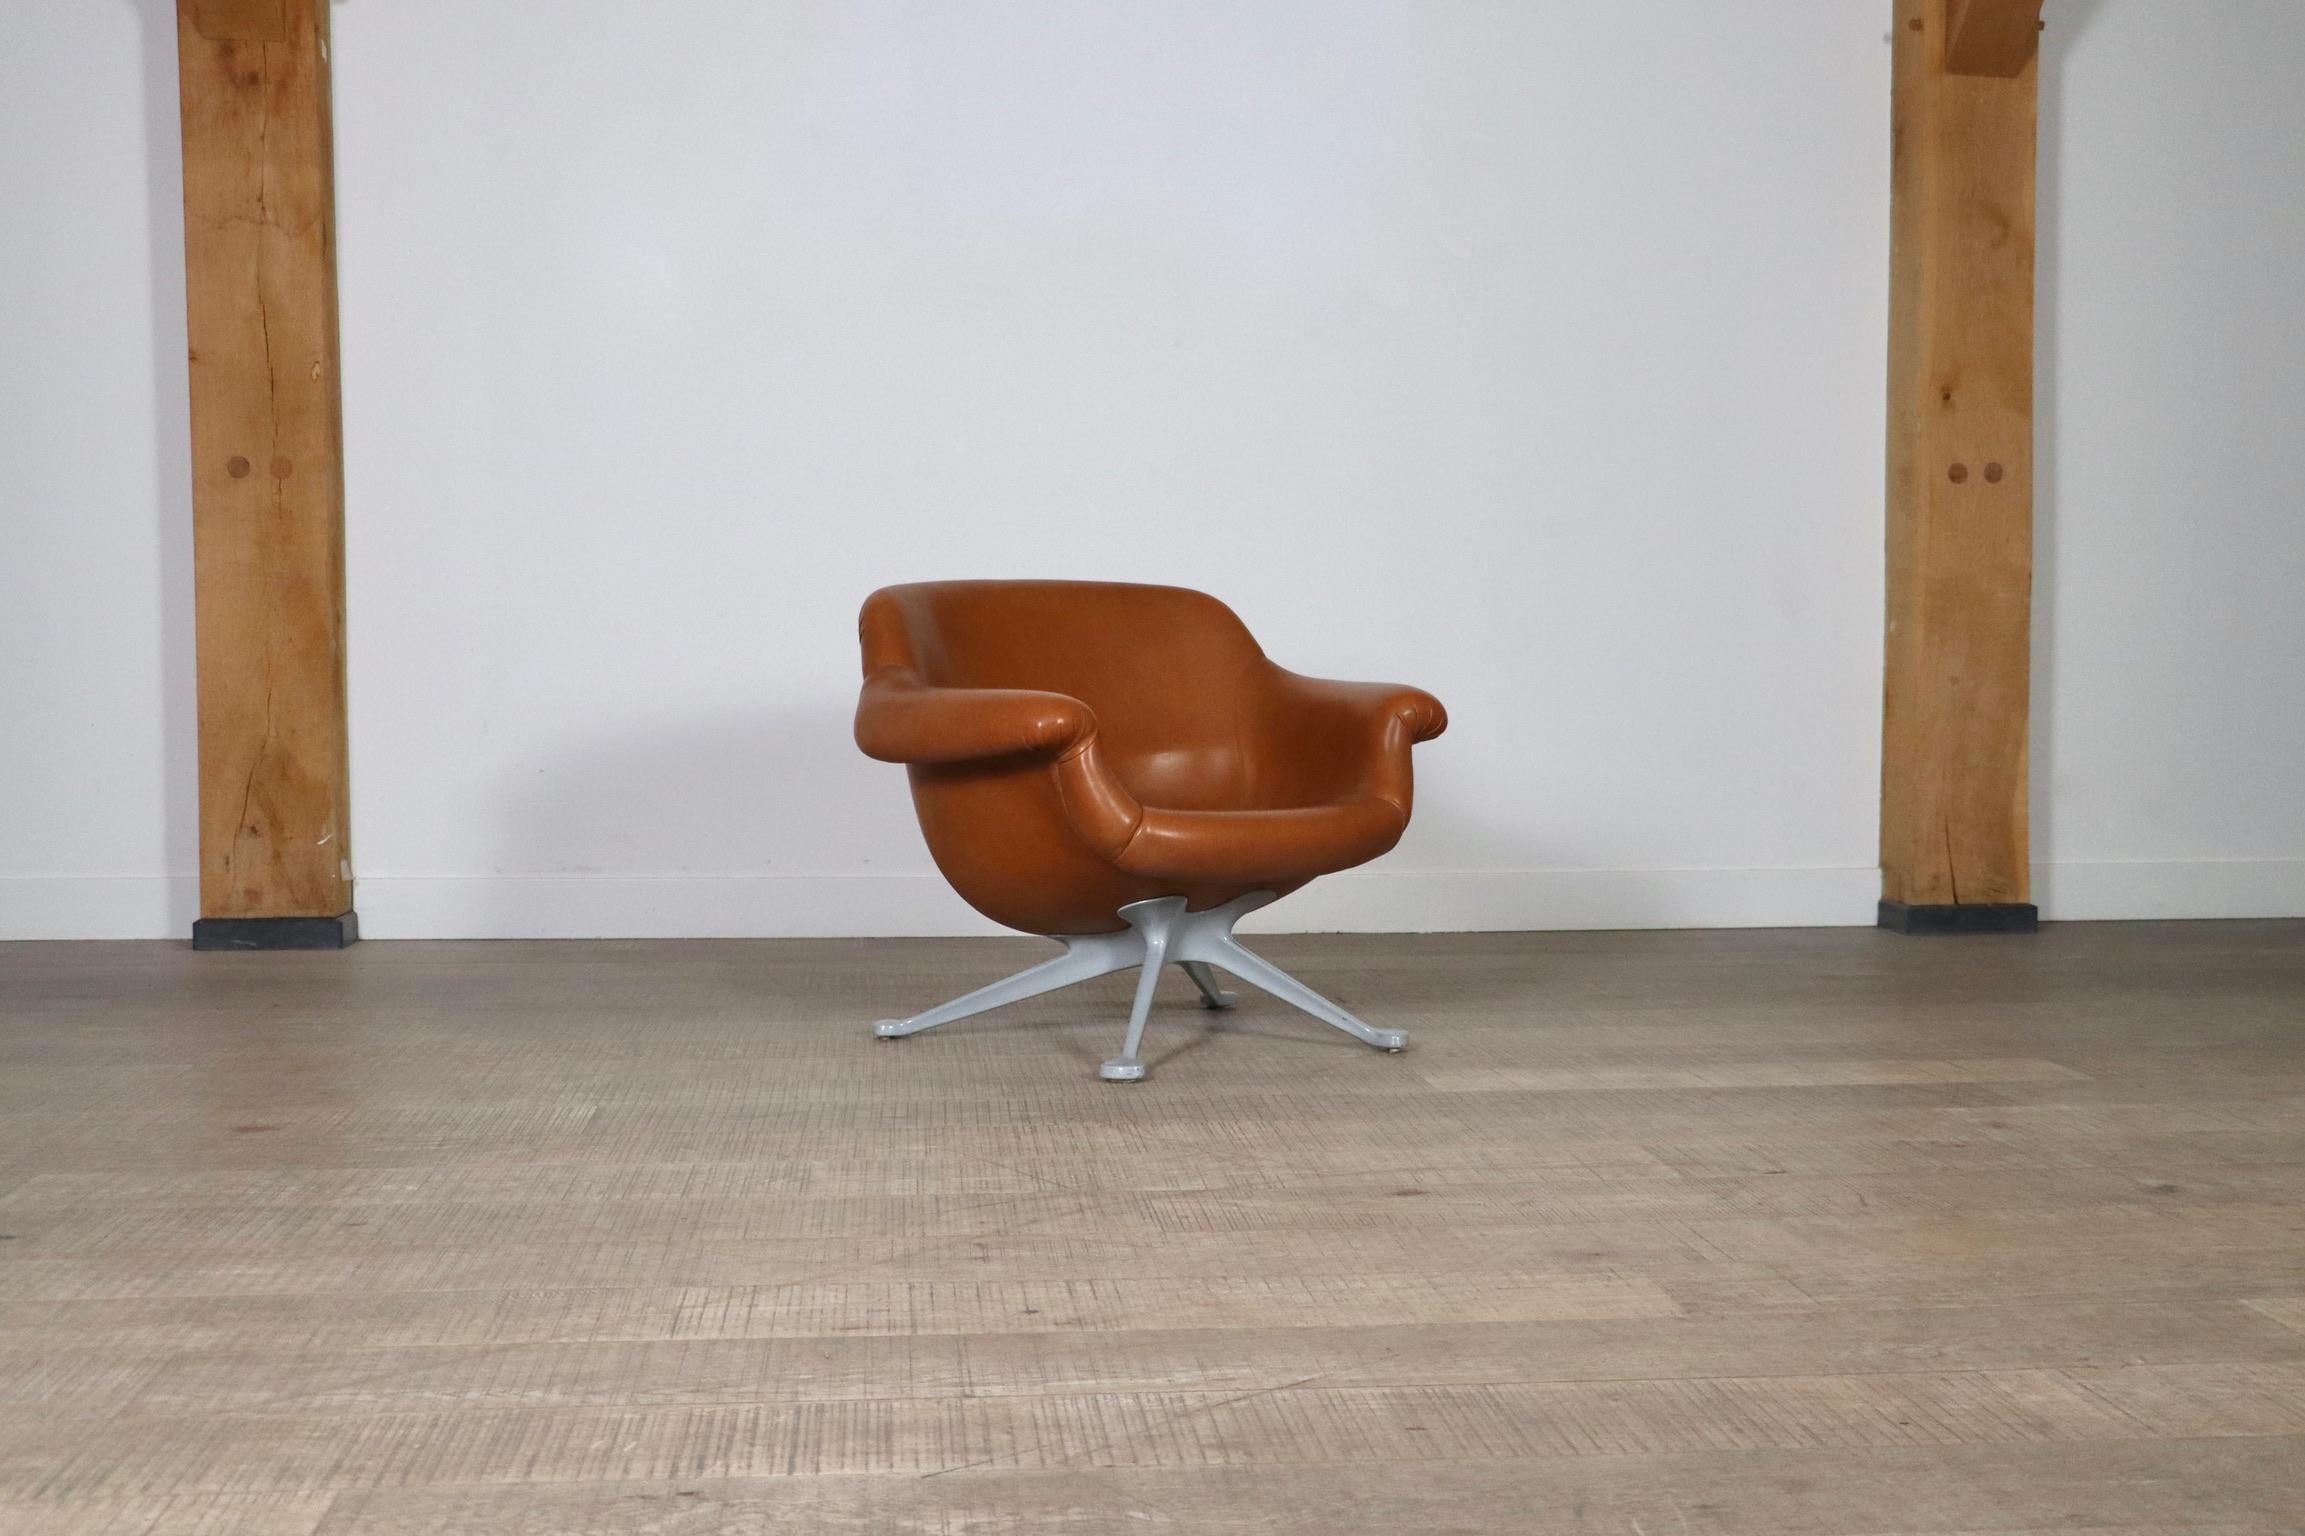 Très rare chaise longue conçue par Angelo Mangiarotti, fabriquée par Cassina en Italie, vers 1960. Ce modèle, n° 1110, est extrêmement difficile à trouver et son design est absolument époustouflant. La chaise a une base en aluminium gris de haute